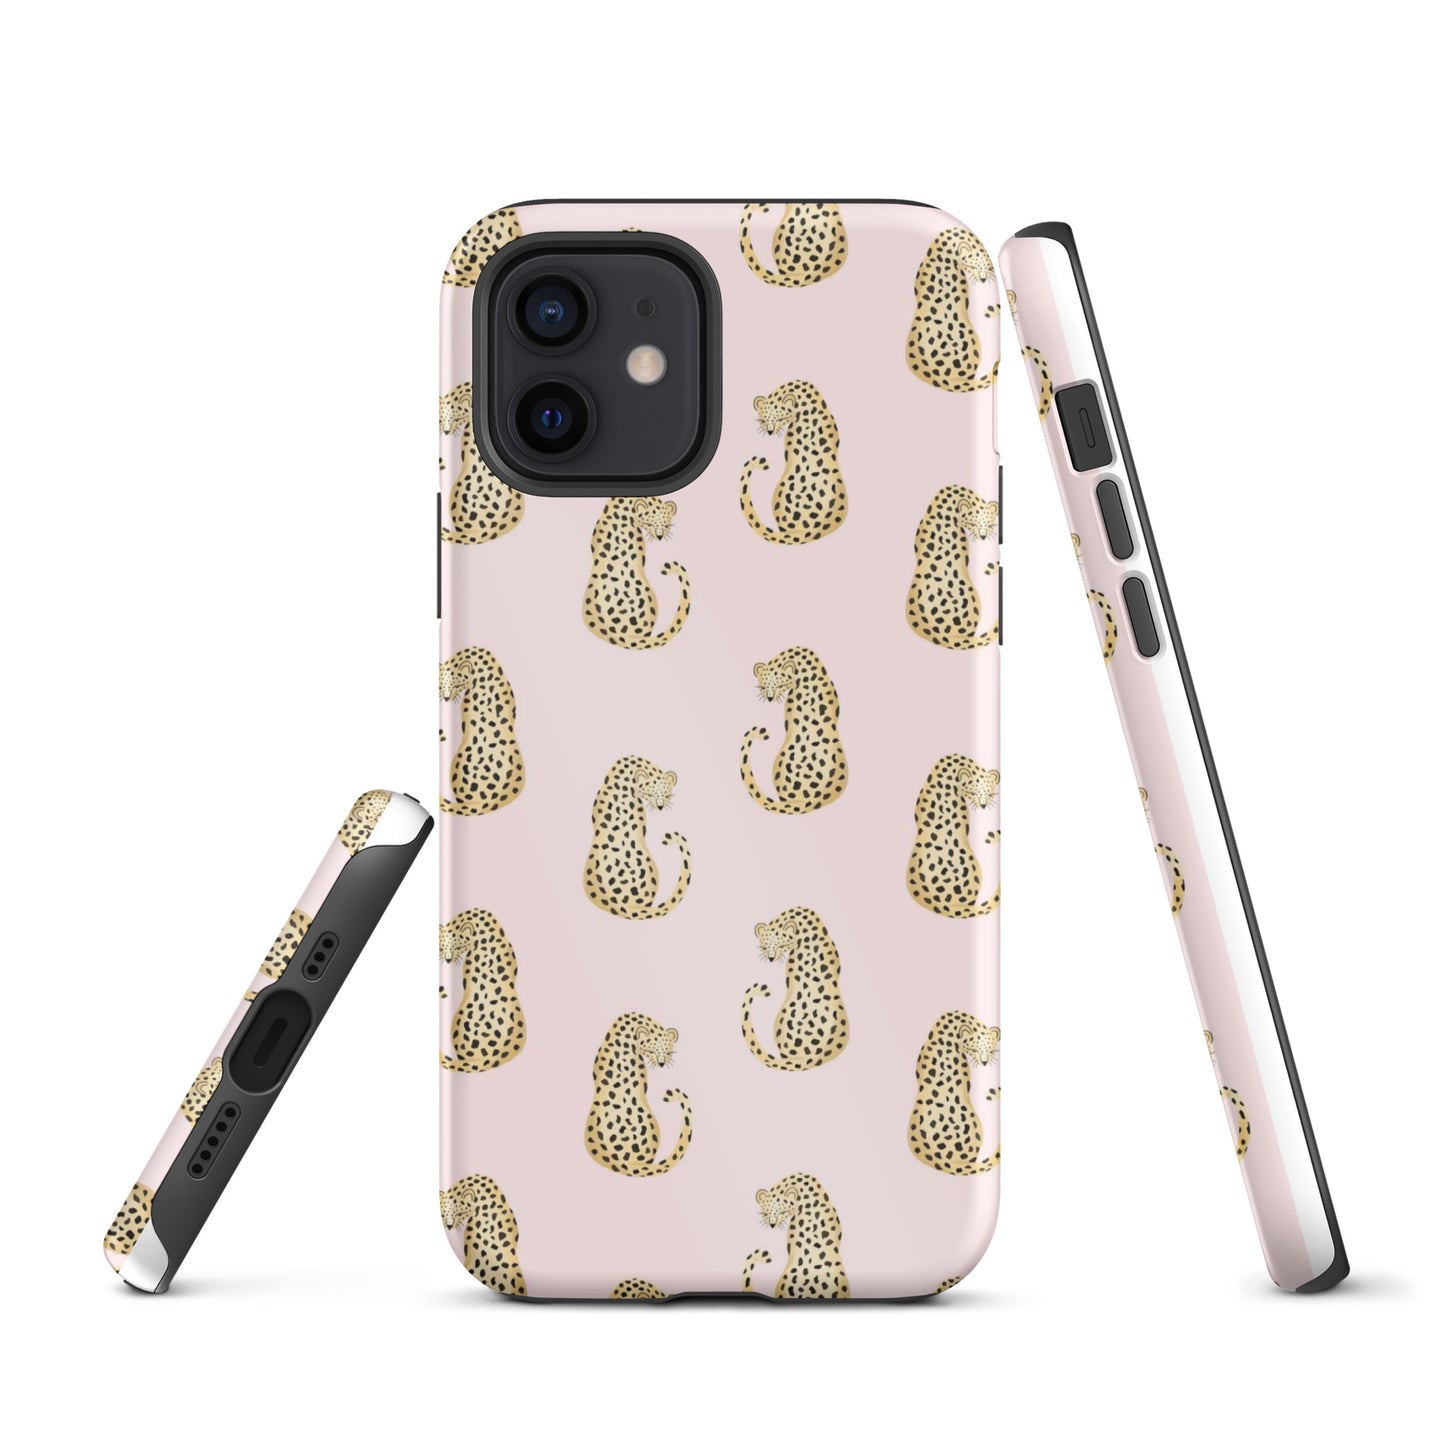 Leopard Tough iPhone Case